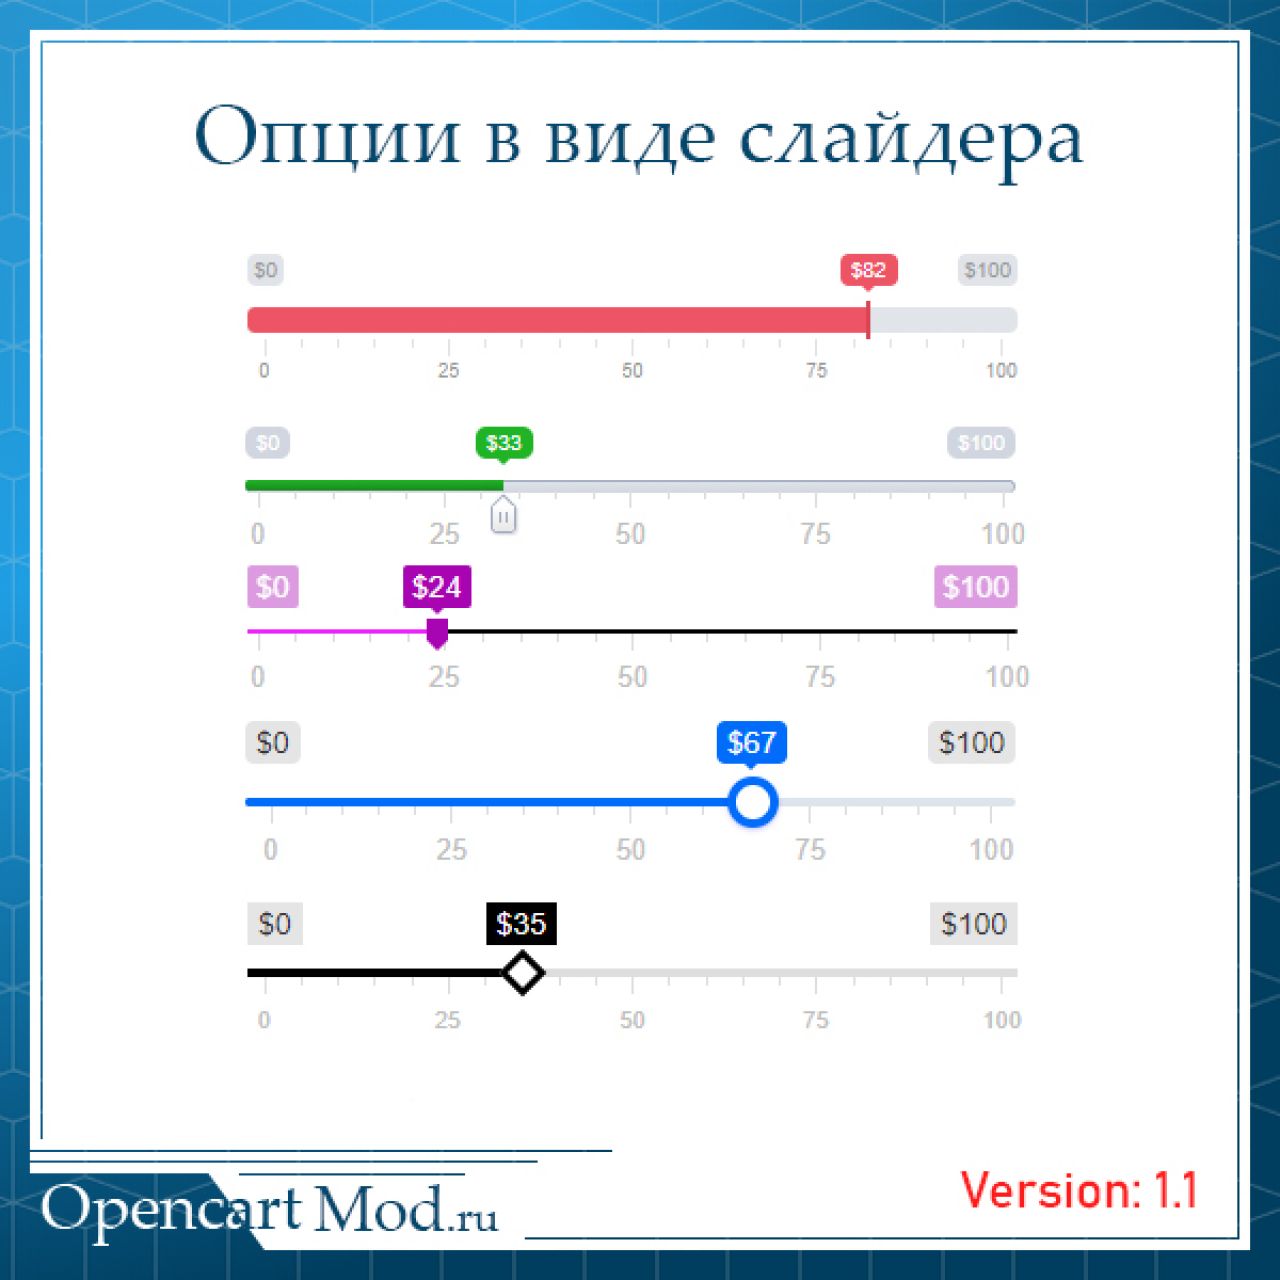 Опции в виде слайдера Opencart из категории Опции для CMS OpenCart (ОпенКарт)